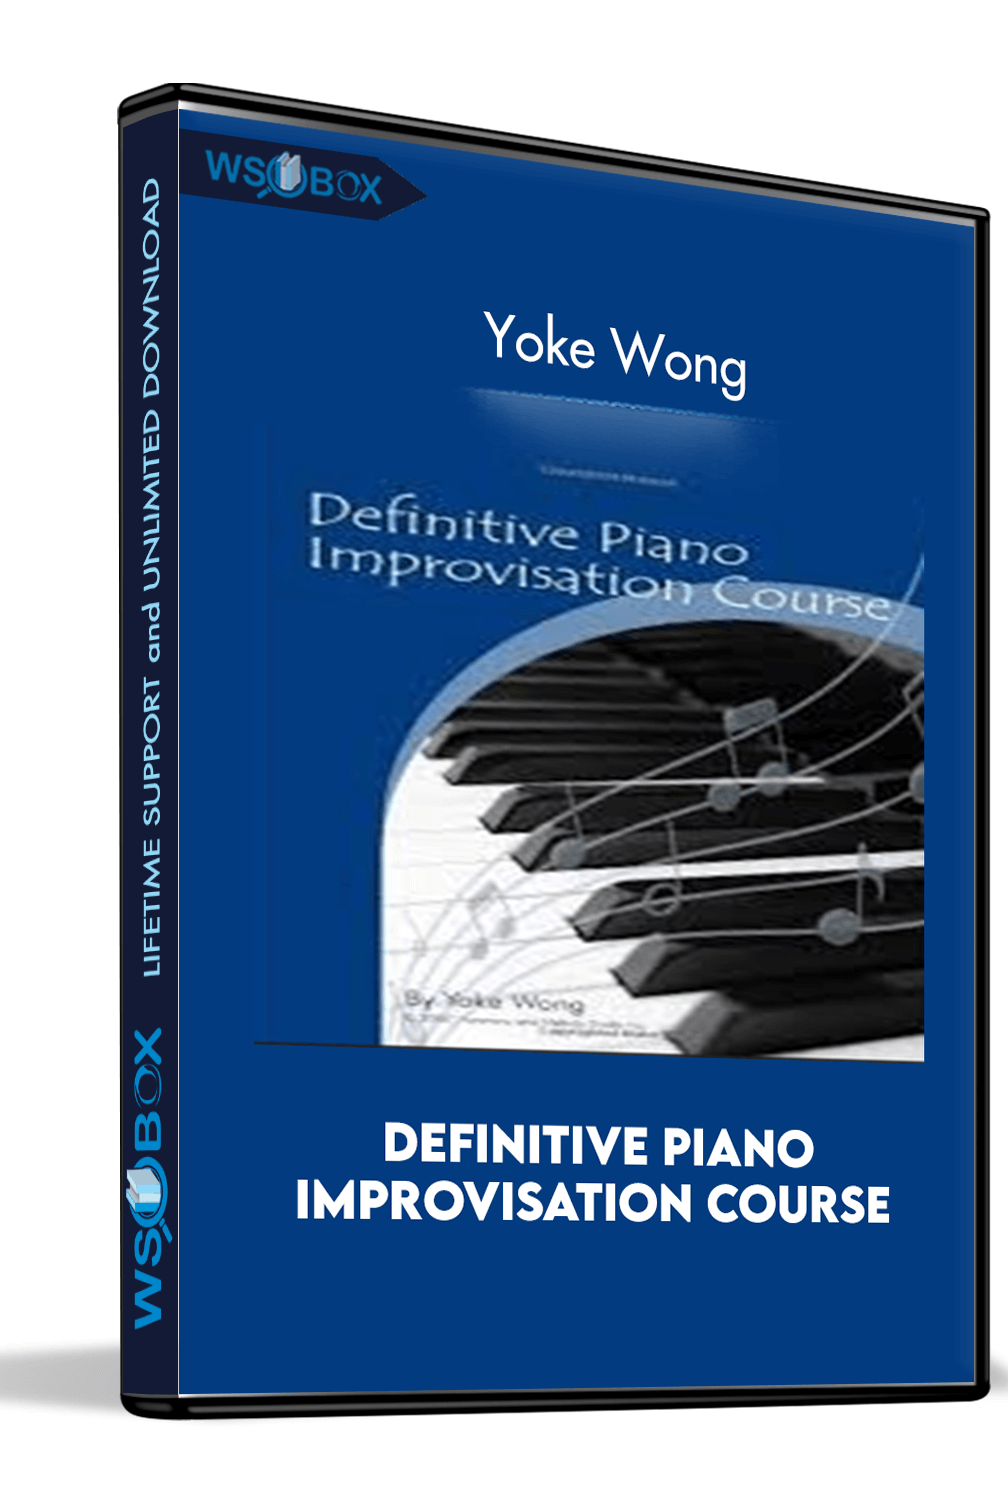 Definitive Piano Improvisation Course – Yoke Wong